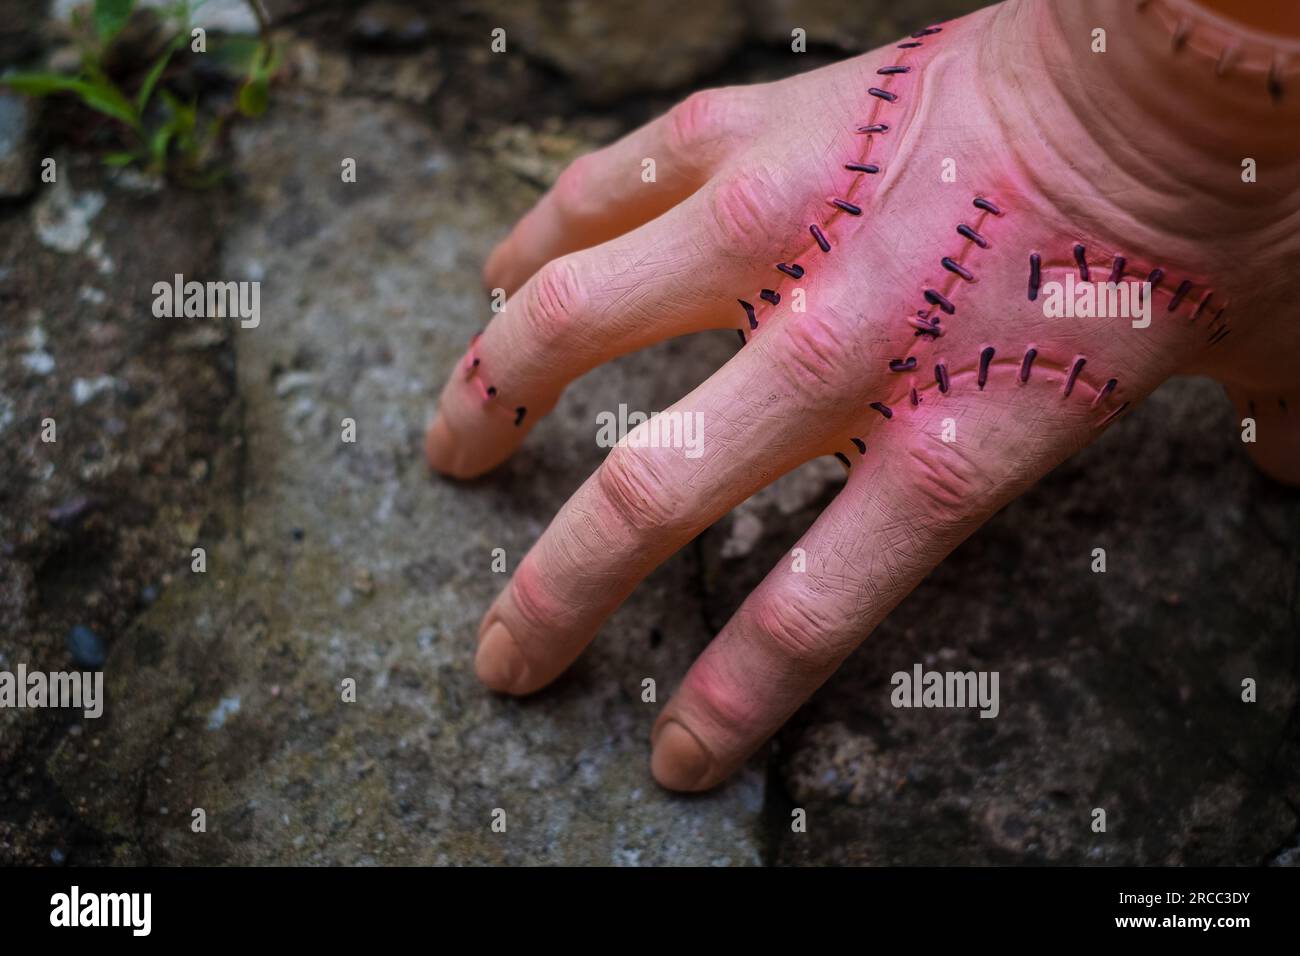 Unheimlich realistische menschliche Hand mit Narben und Stichen. Hand mit aktiven Fingern abschneiden. Plastikspielzeug. Stockfoto